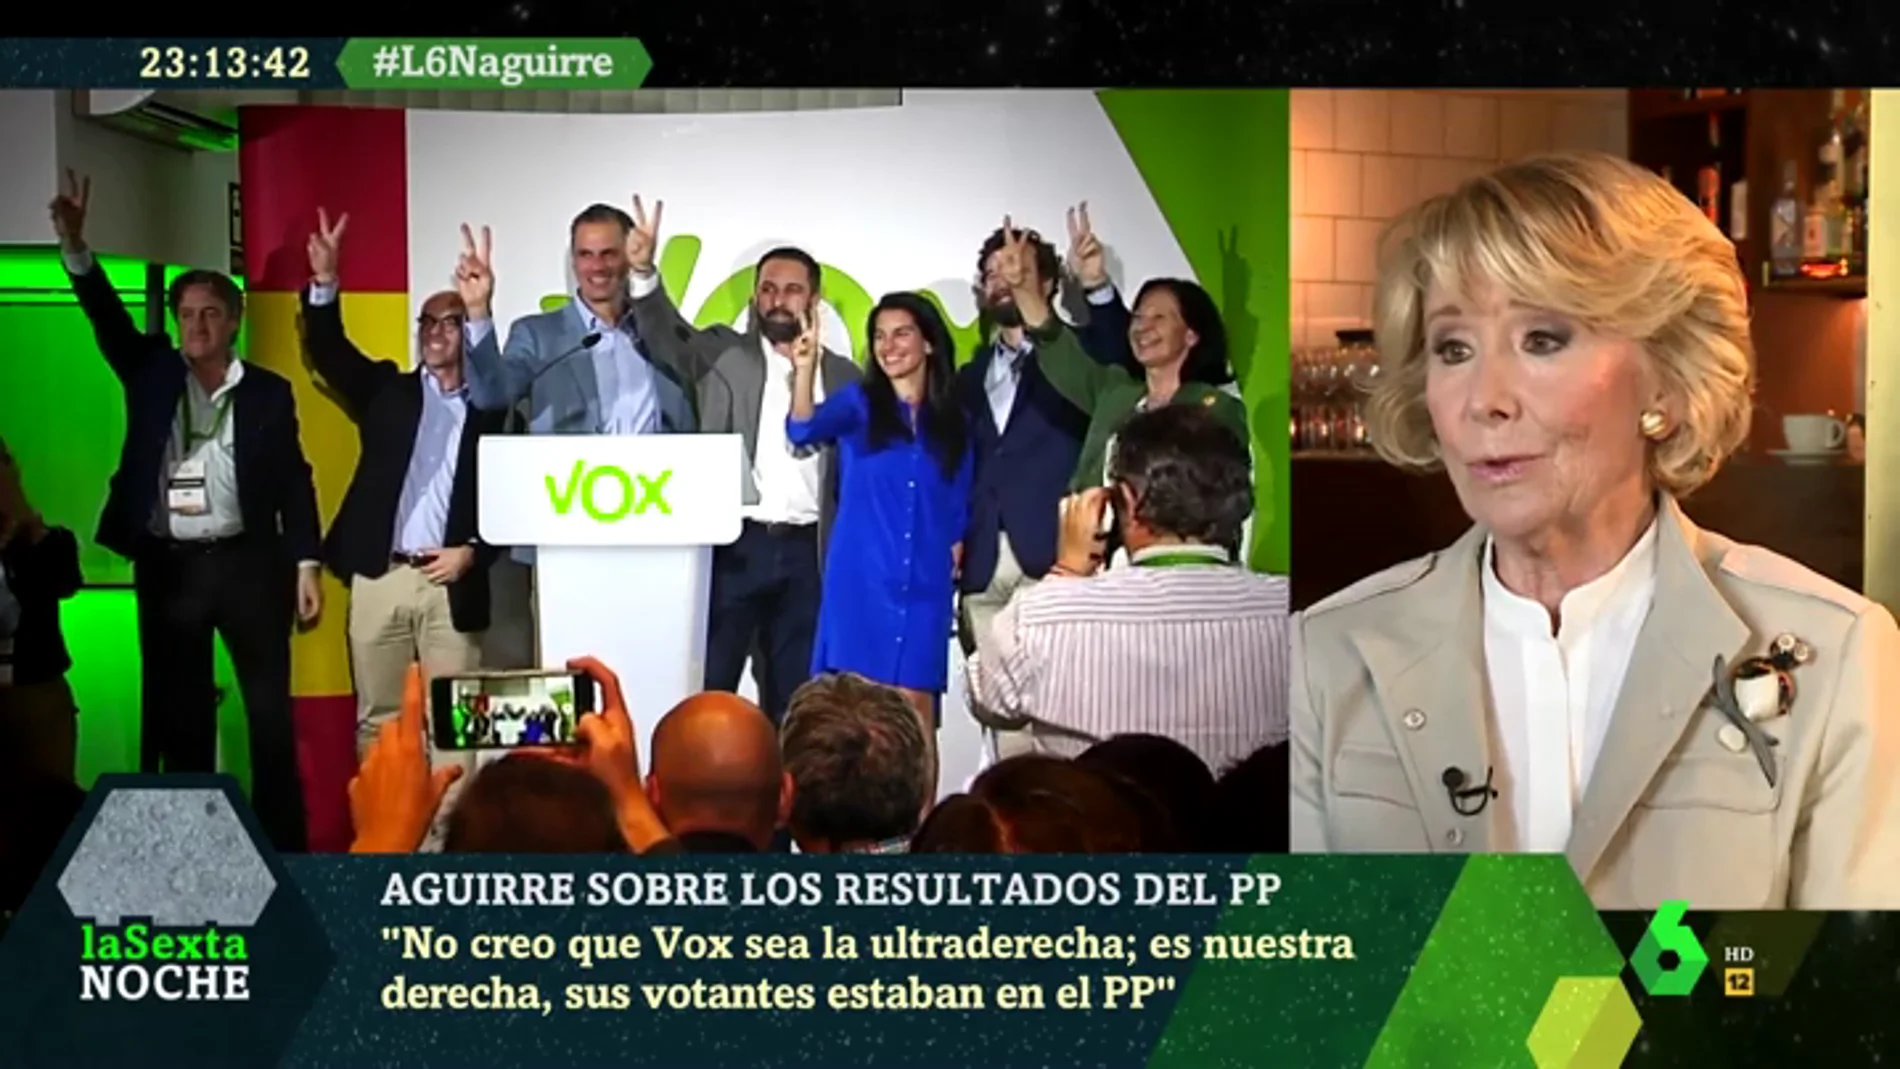 Esperanza Aguirre: "Yo no creo que Vox sea ultraderecha, es nuestra derecha"